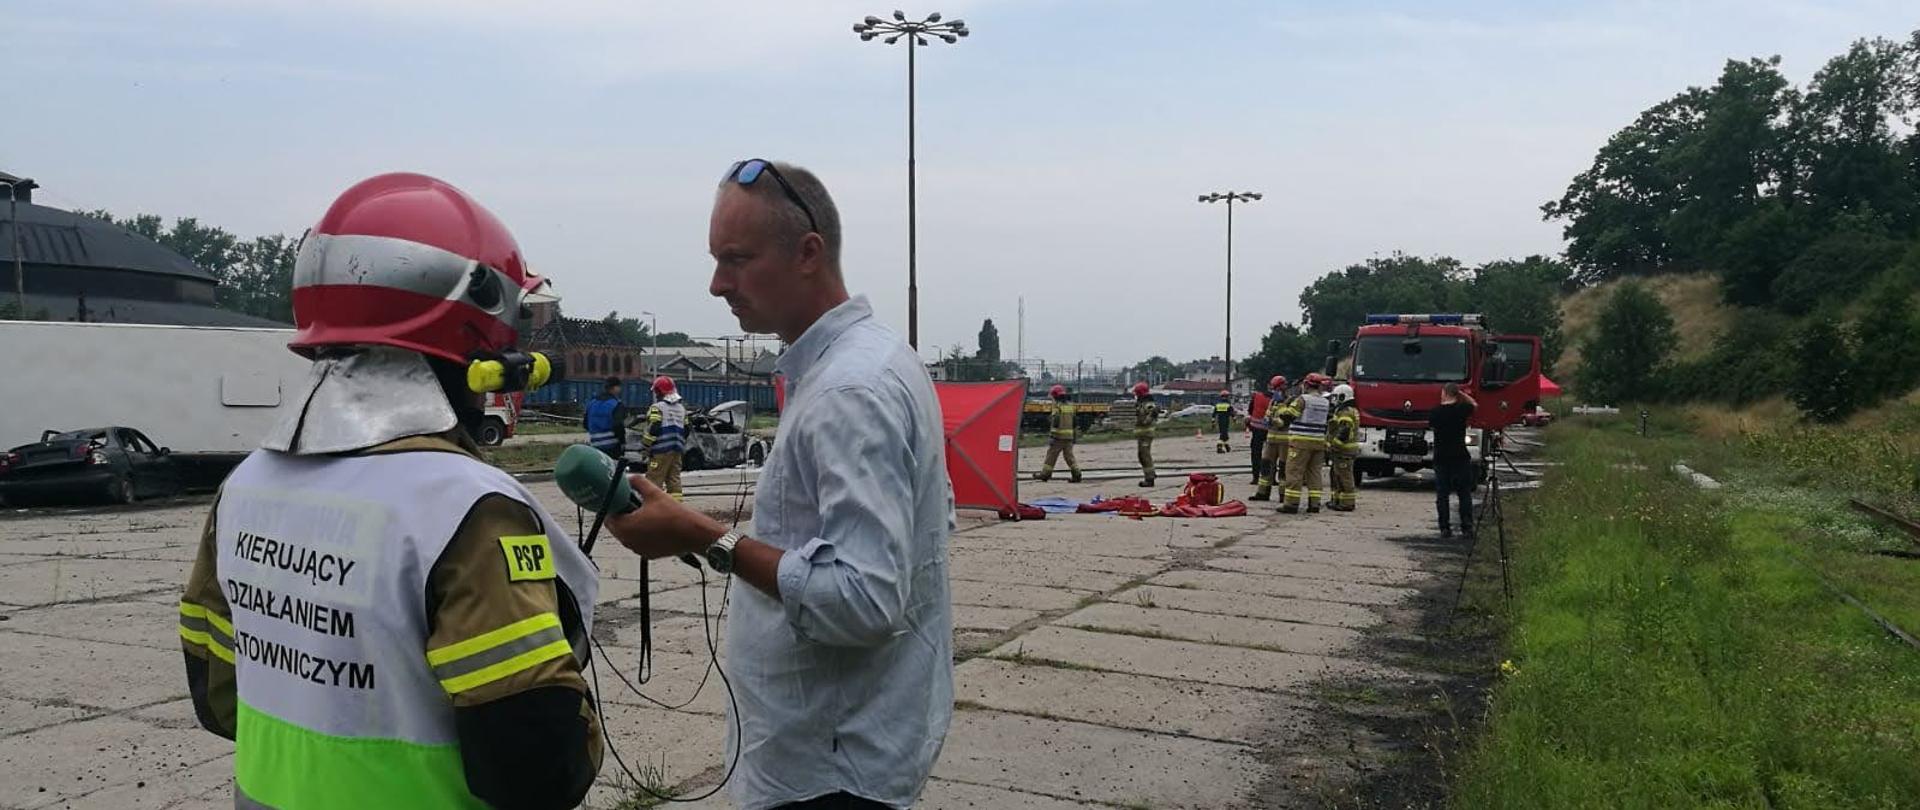 Kierujący działaniem ratowniczym udziela informacji dziennikarzowi, strażacy działają na terenie akcji.